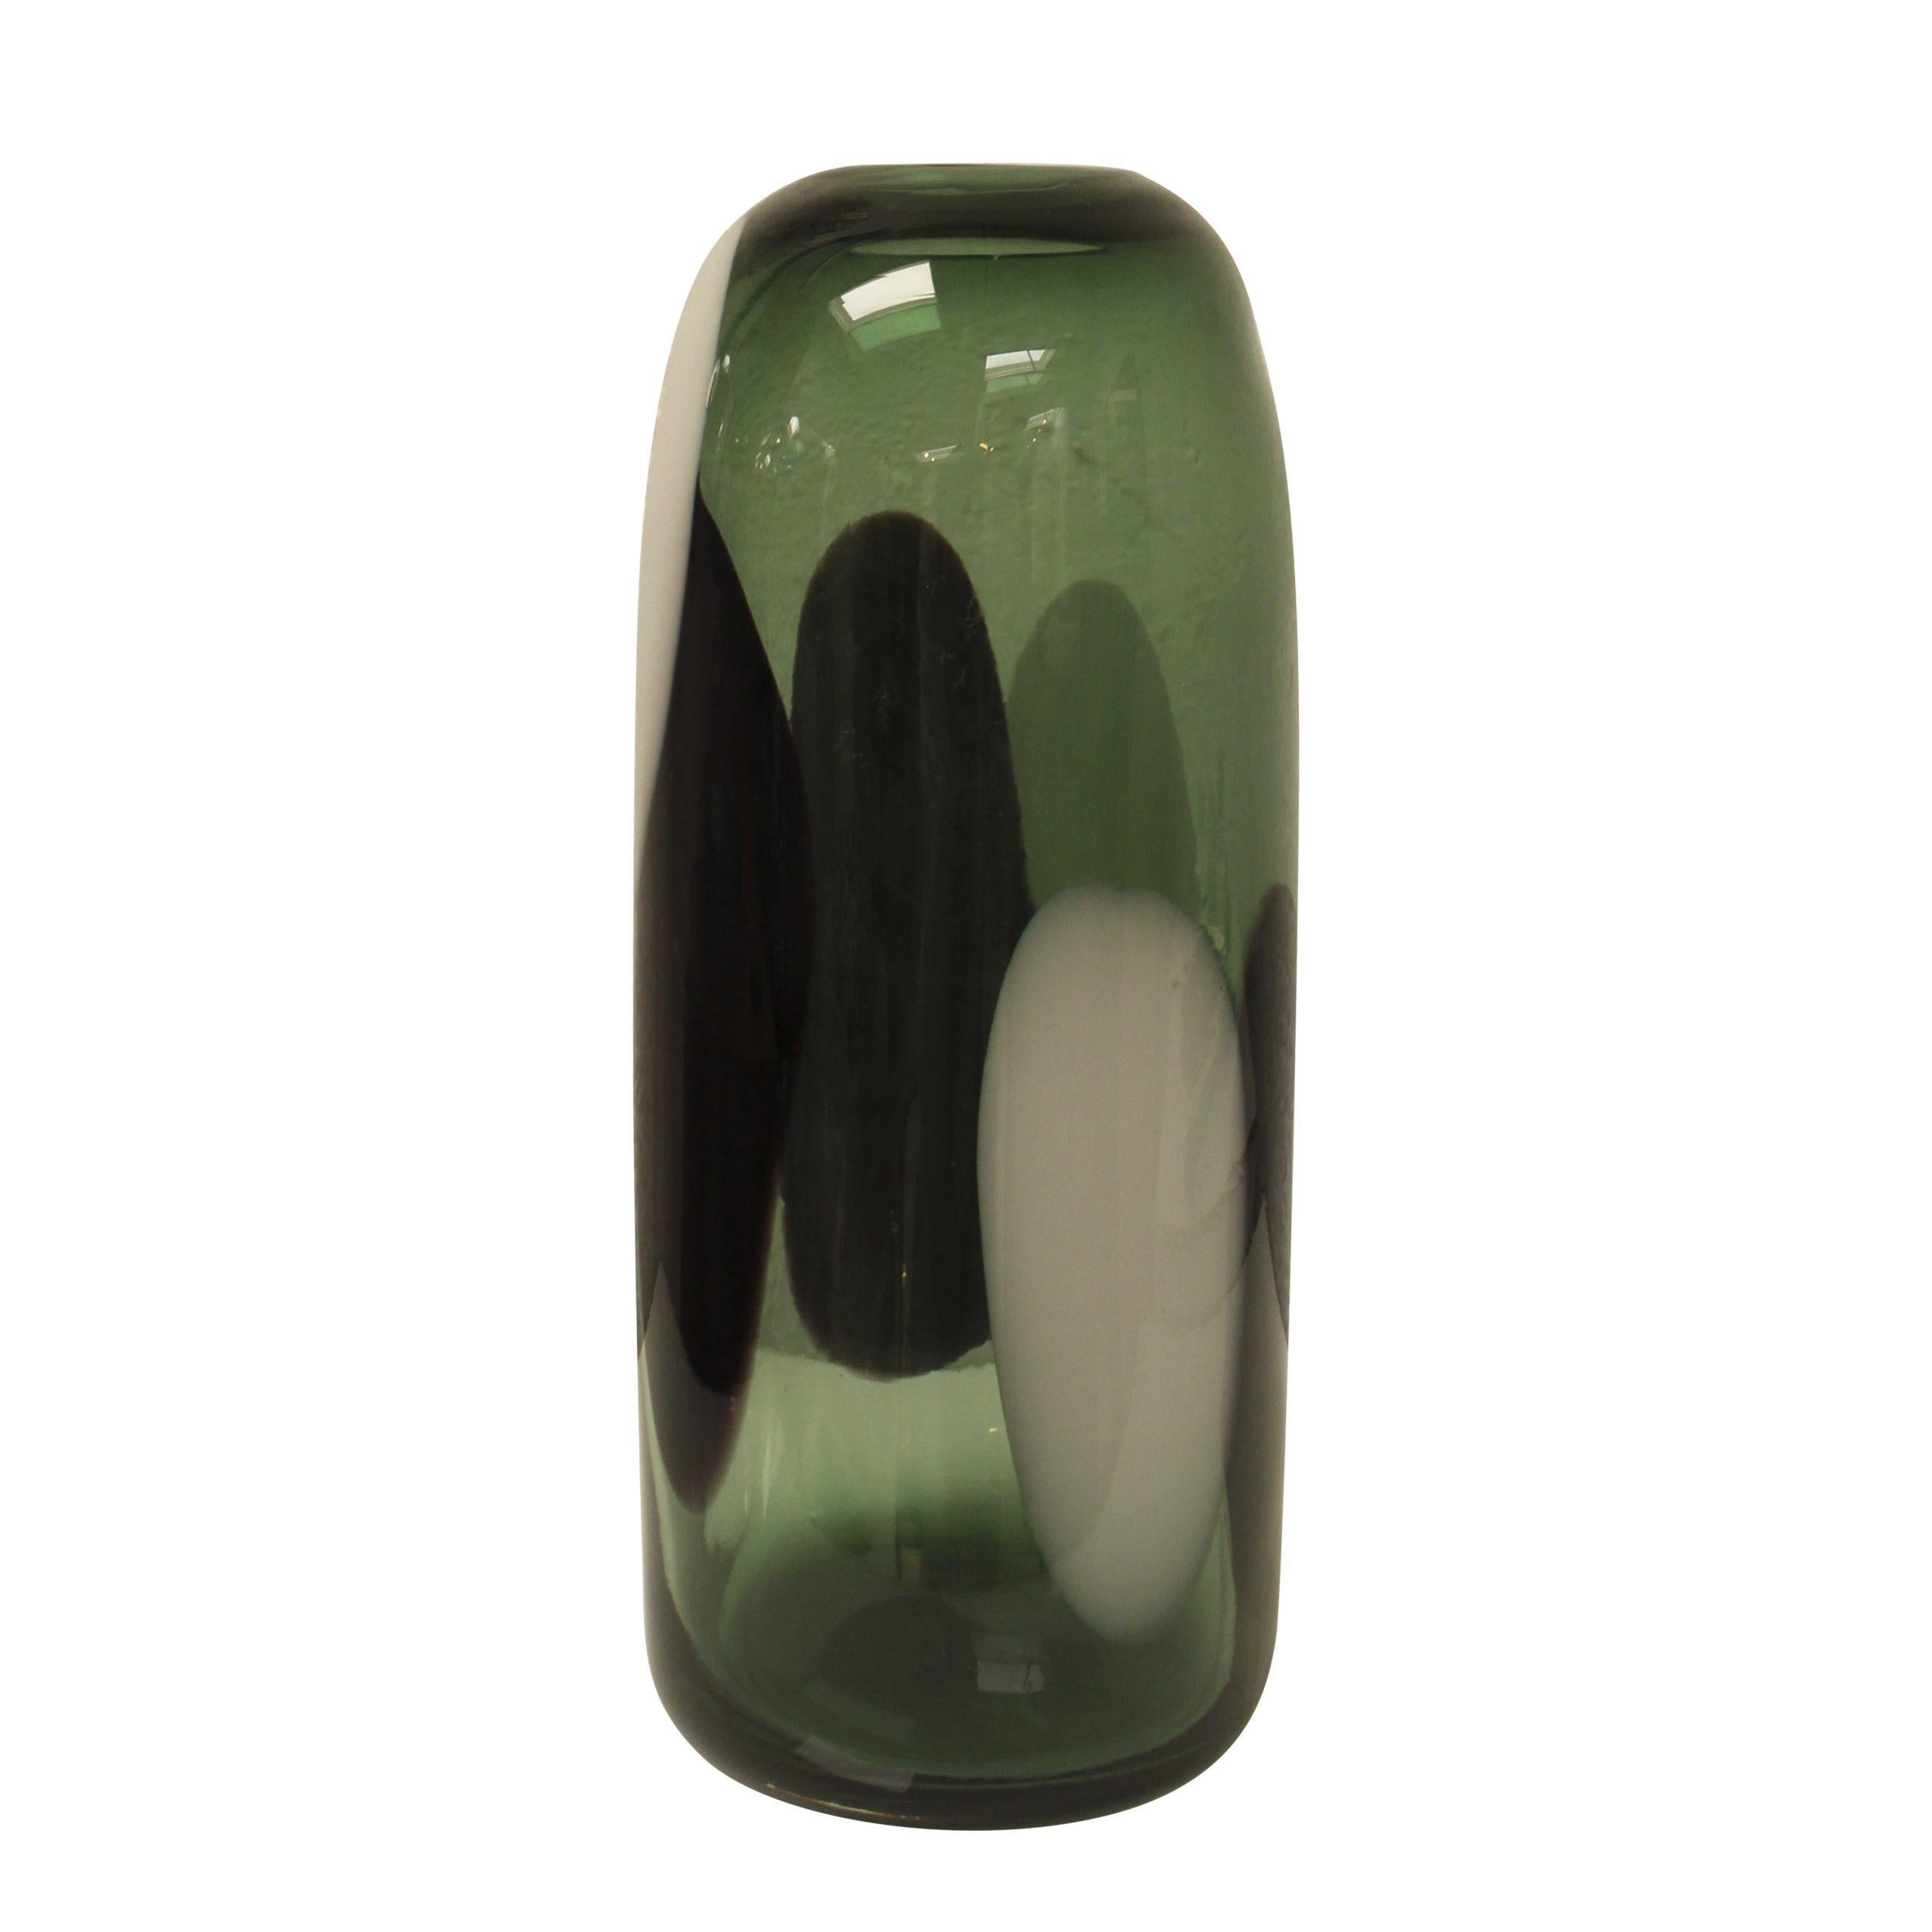 Vase en verre semi-transparent italien soufflé à la main, de forme arrondie, de couleur verte, noire et blanche. 